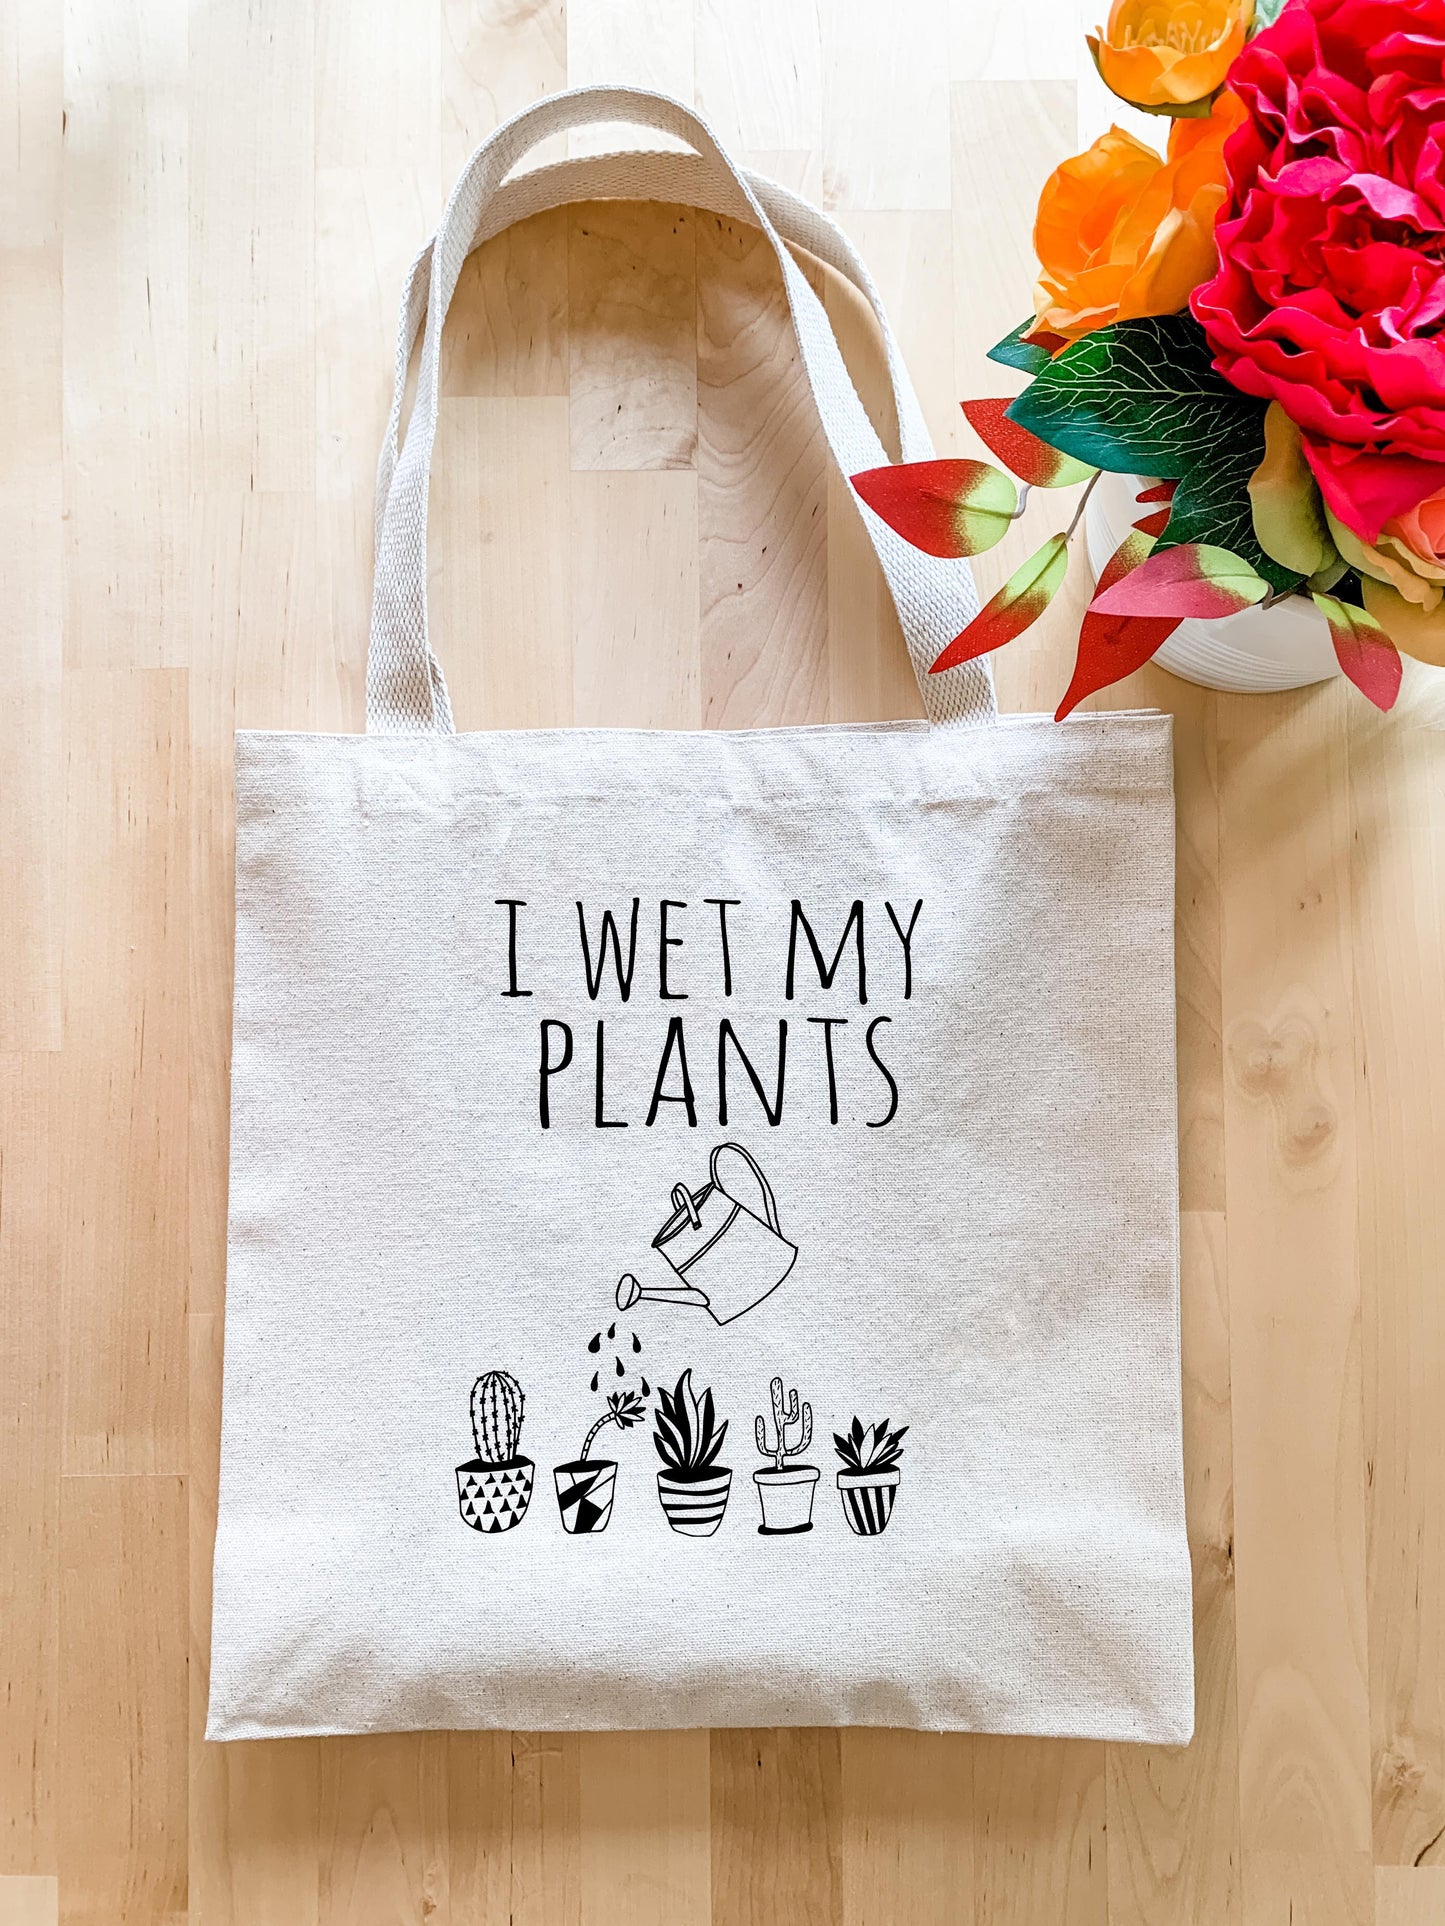 I Wet My Plants - Tote Bag - MoonlightMakers